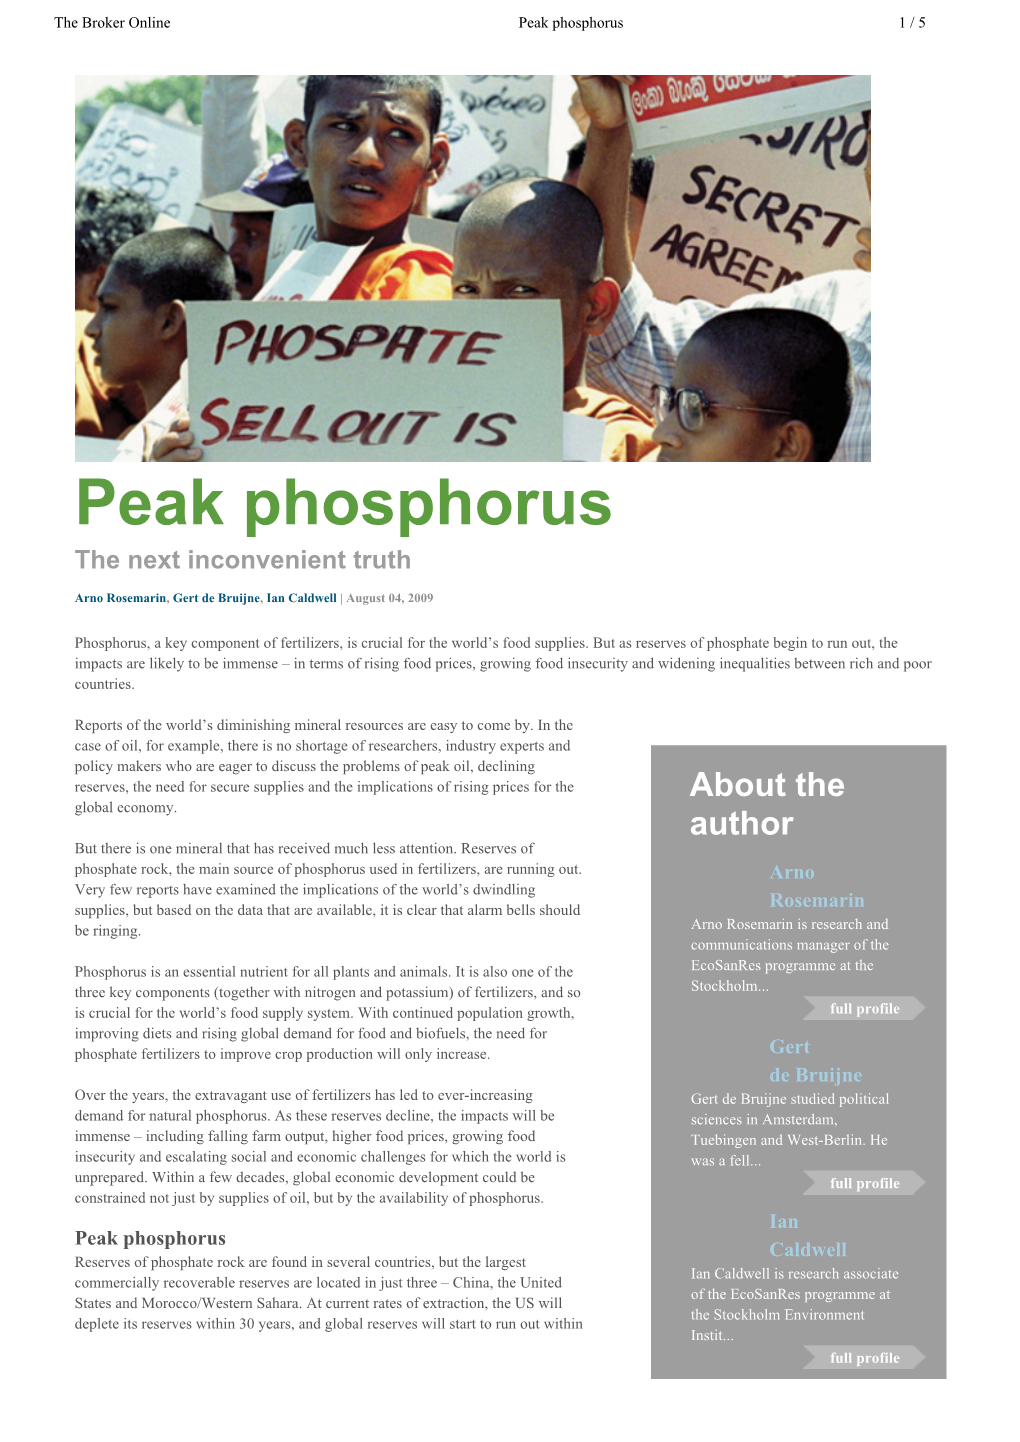 Peak Phosphorus 1 / 5